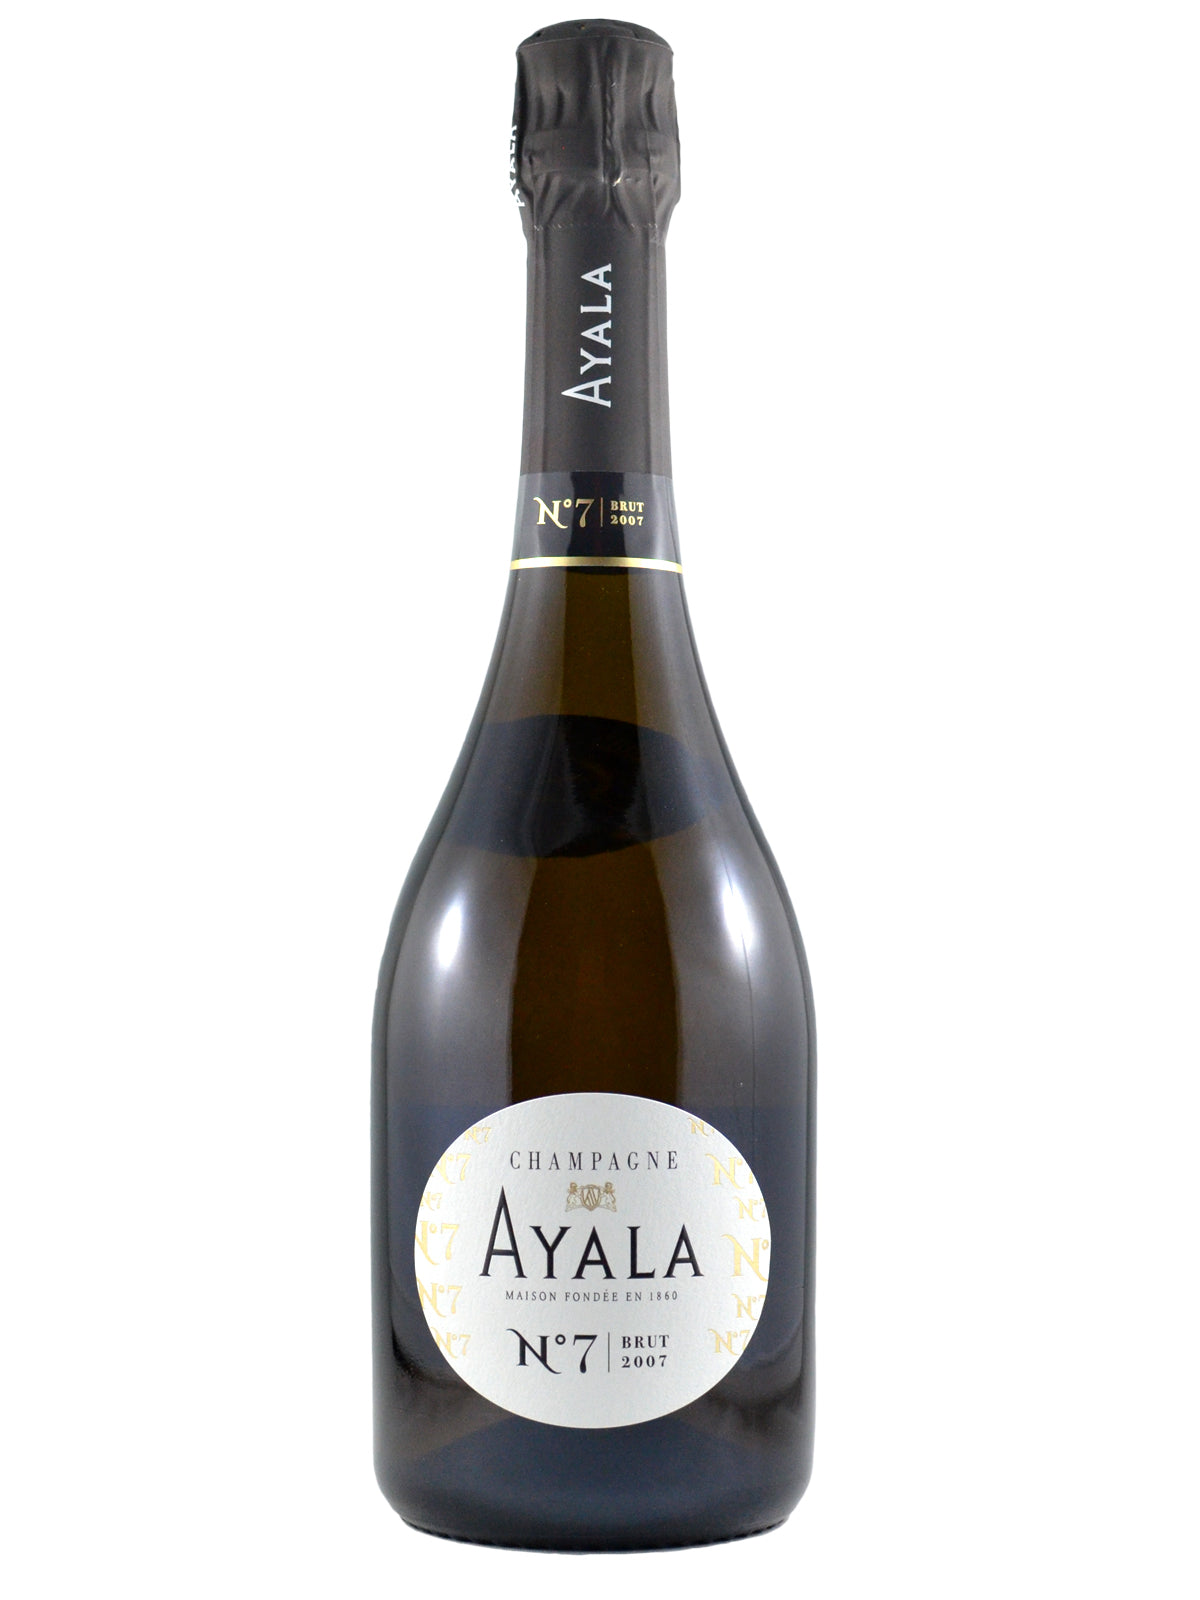 Ayala No. 7 Champagne Brut 2007